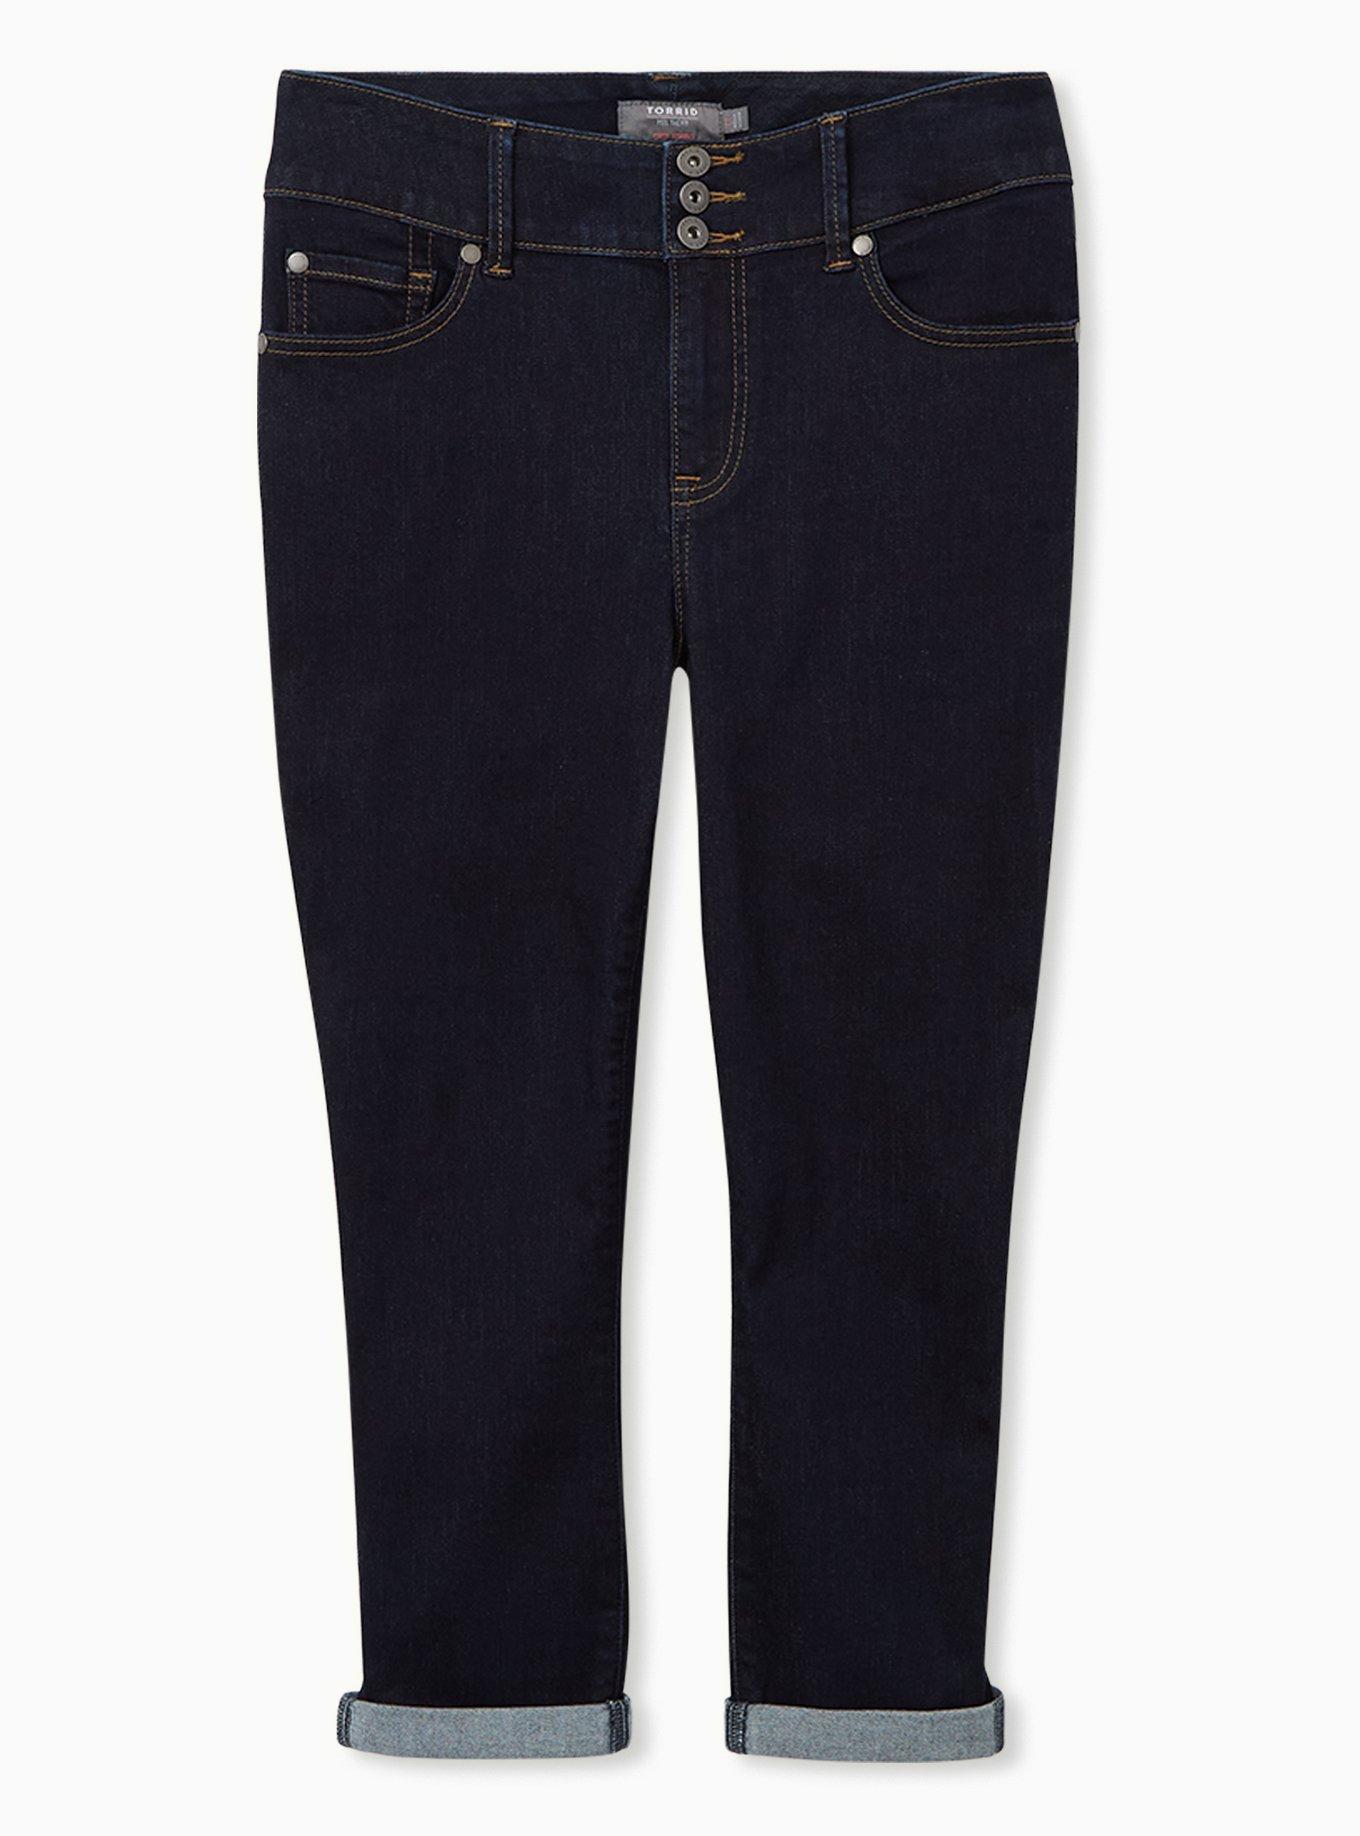 Torrid Cropped Jeggings Capri Jeans Size 14 Seafoam Blue Mint Green Pastel